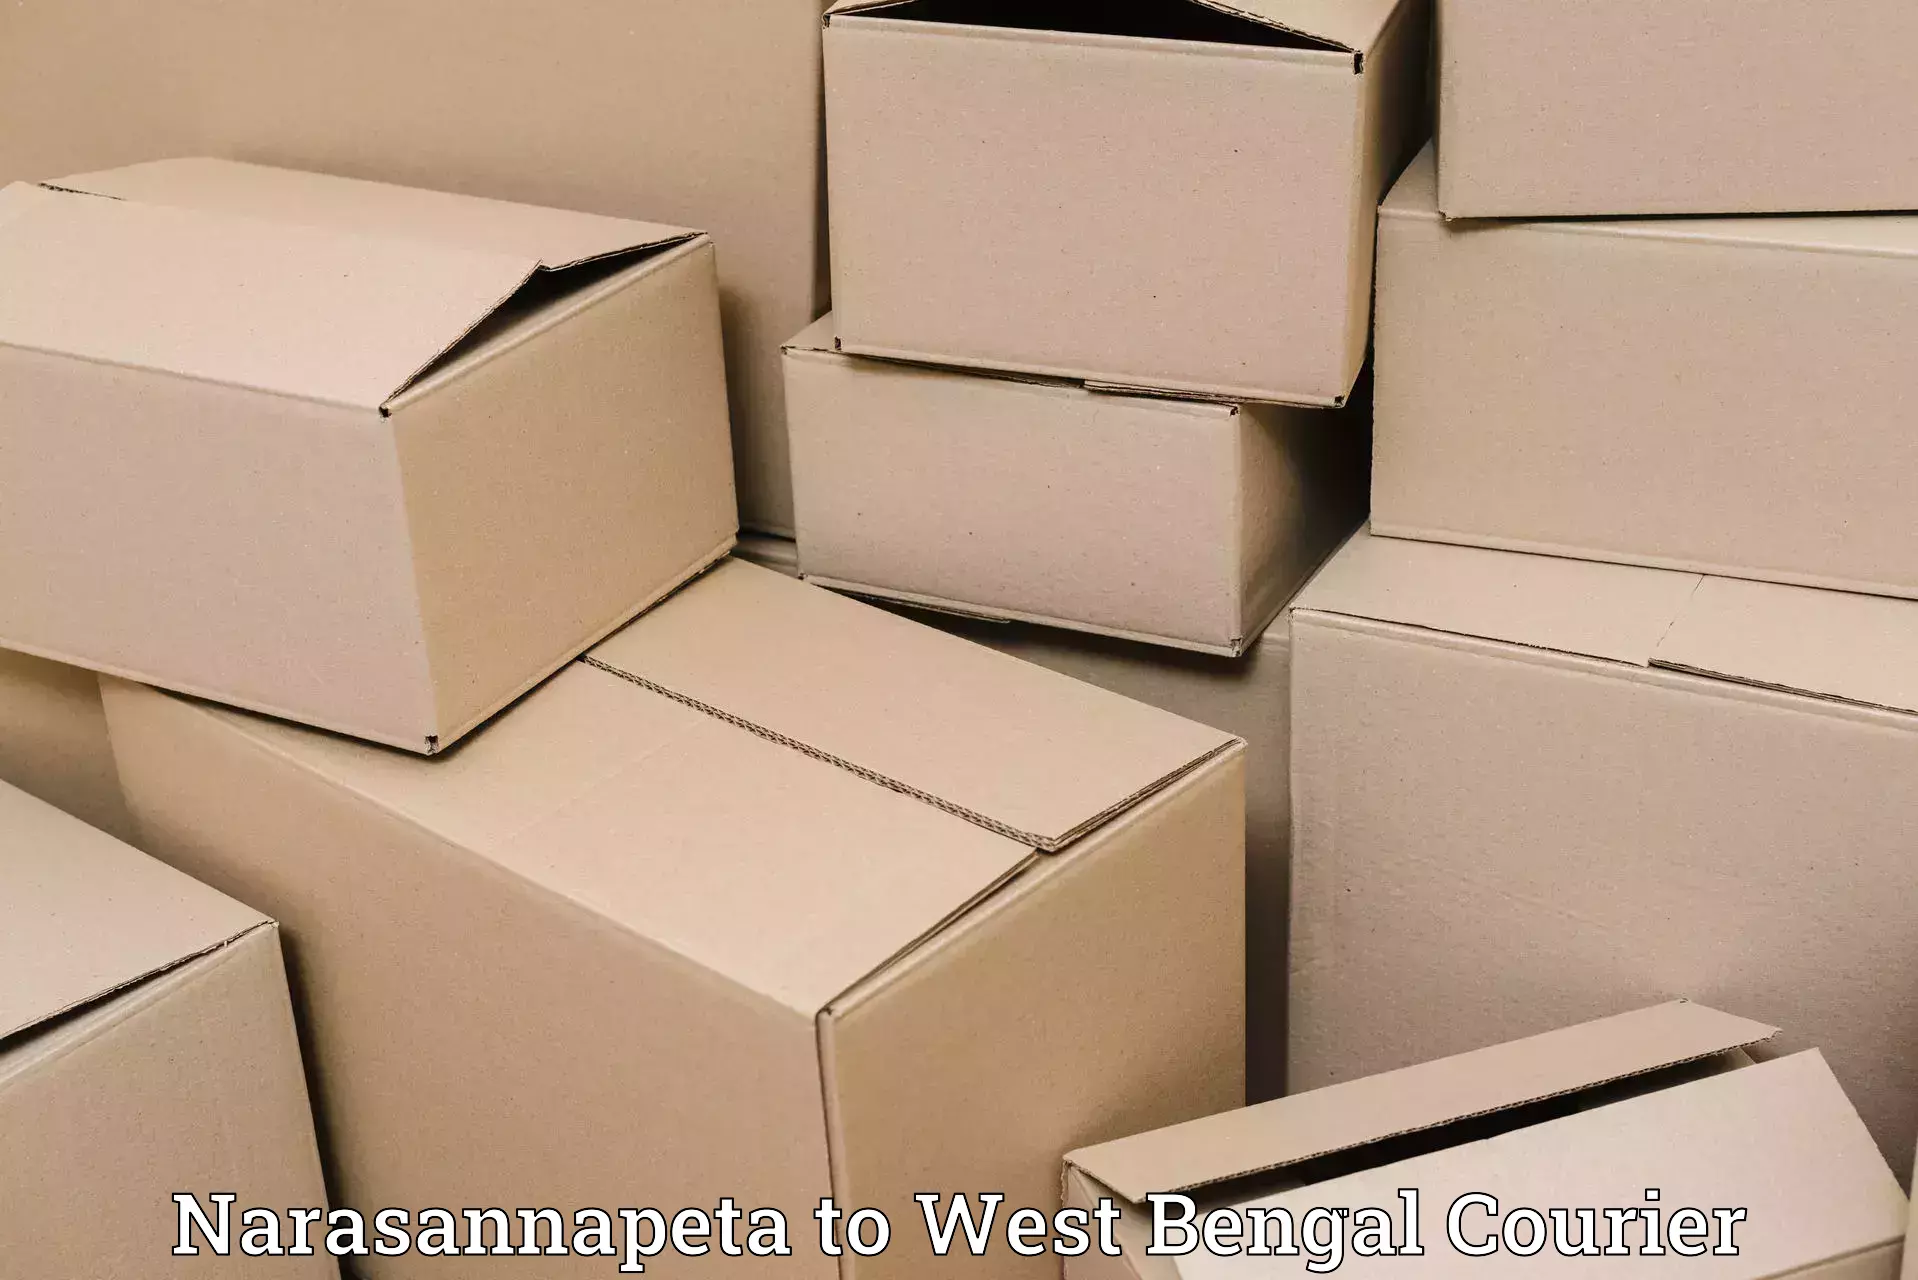 High-performance logistics Narasannapeta to West Bengal